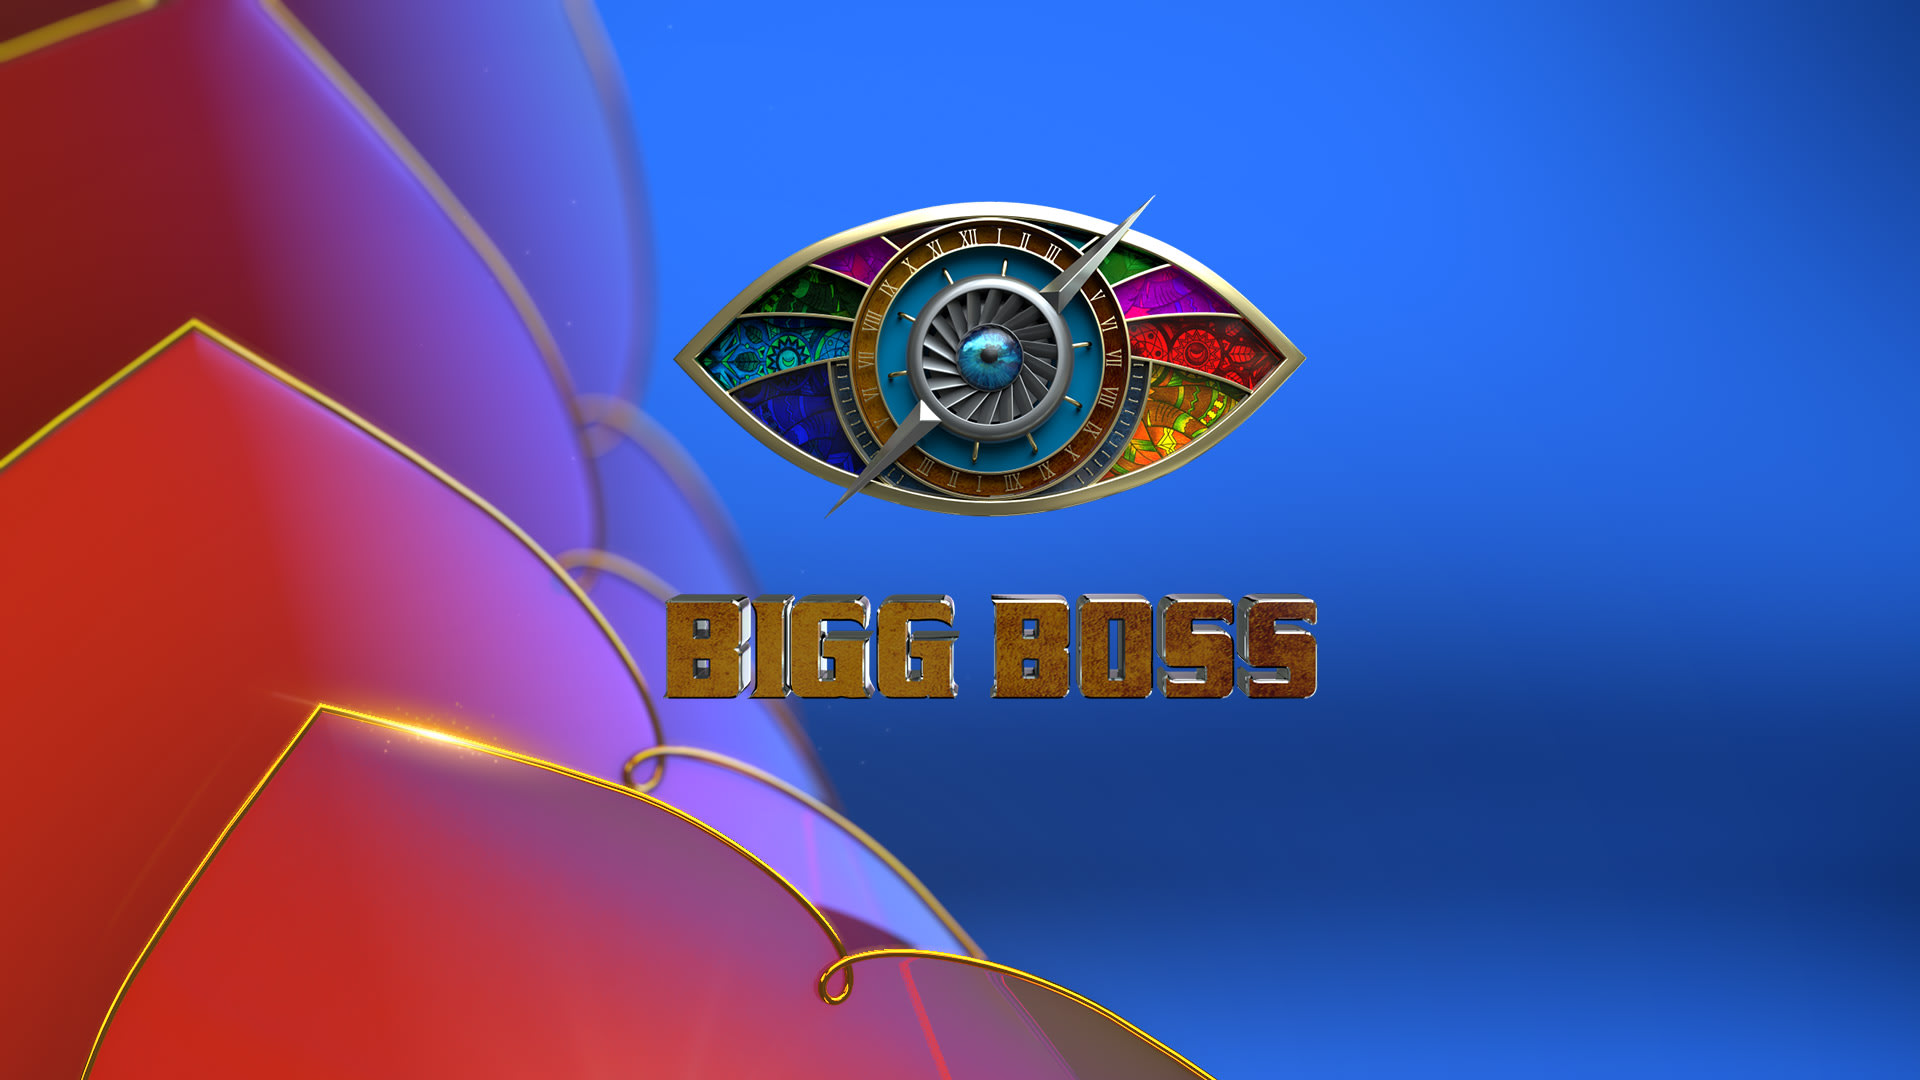 Vijay tv bigg boss season 5